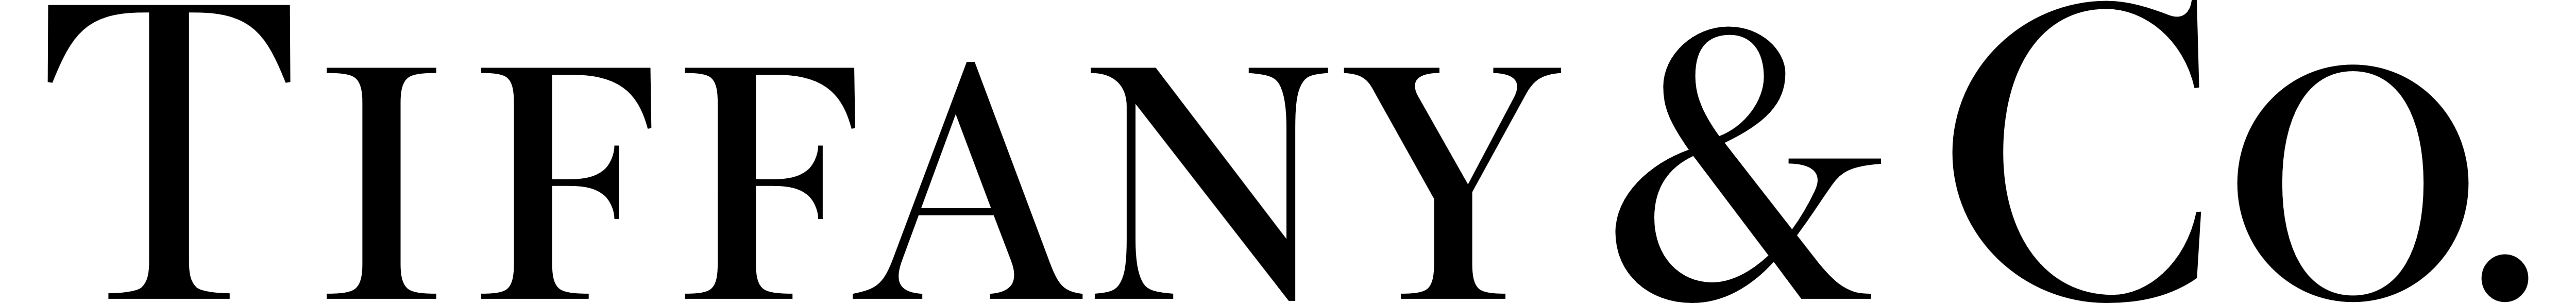 tiffany and co symbol